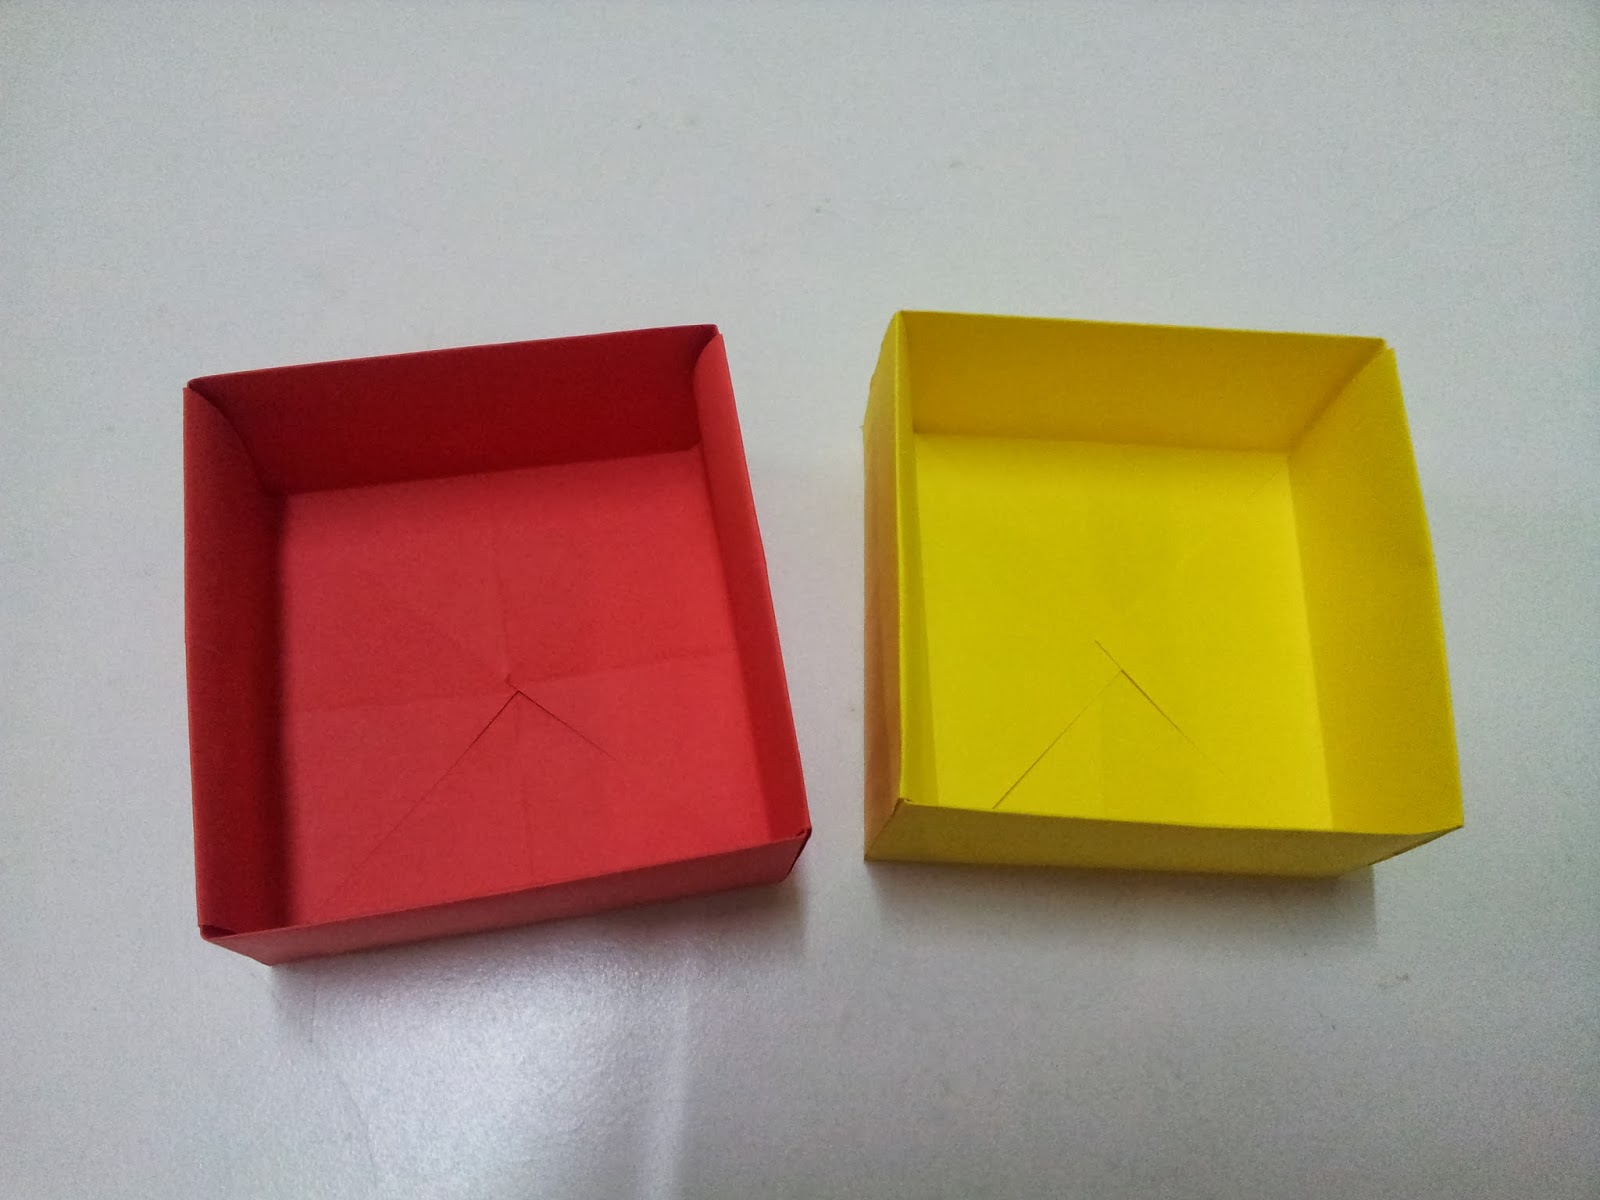 Panduan Kraf Riben dan Kertas Tutorial Kotak Kertas Mudah jpg (1600x1200)